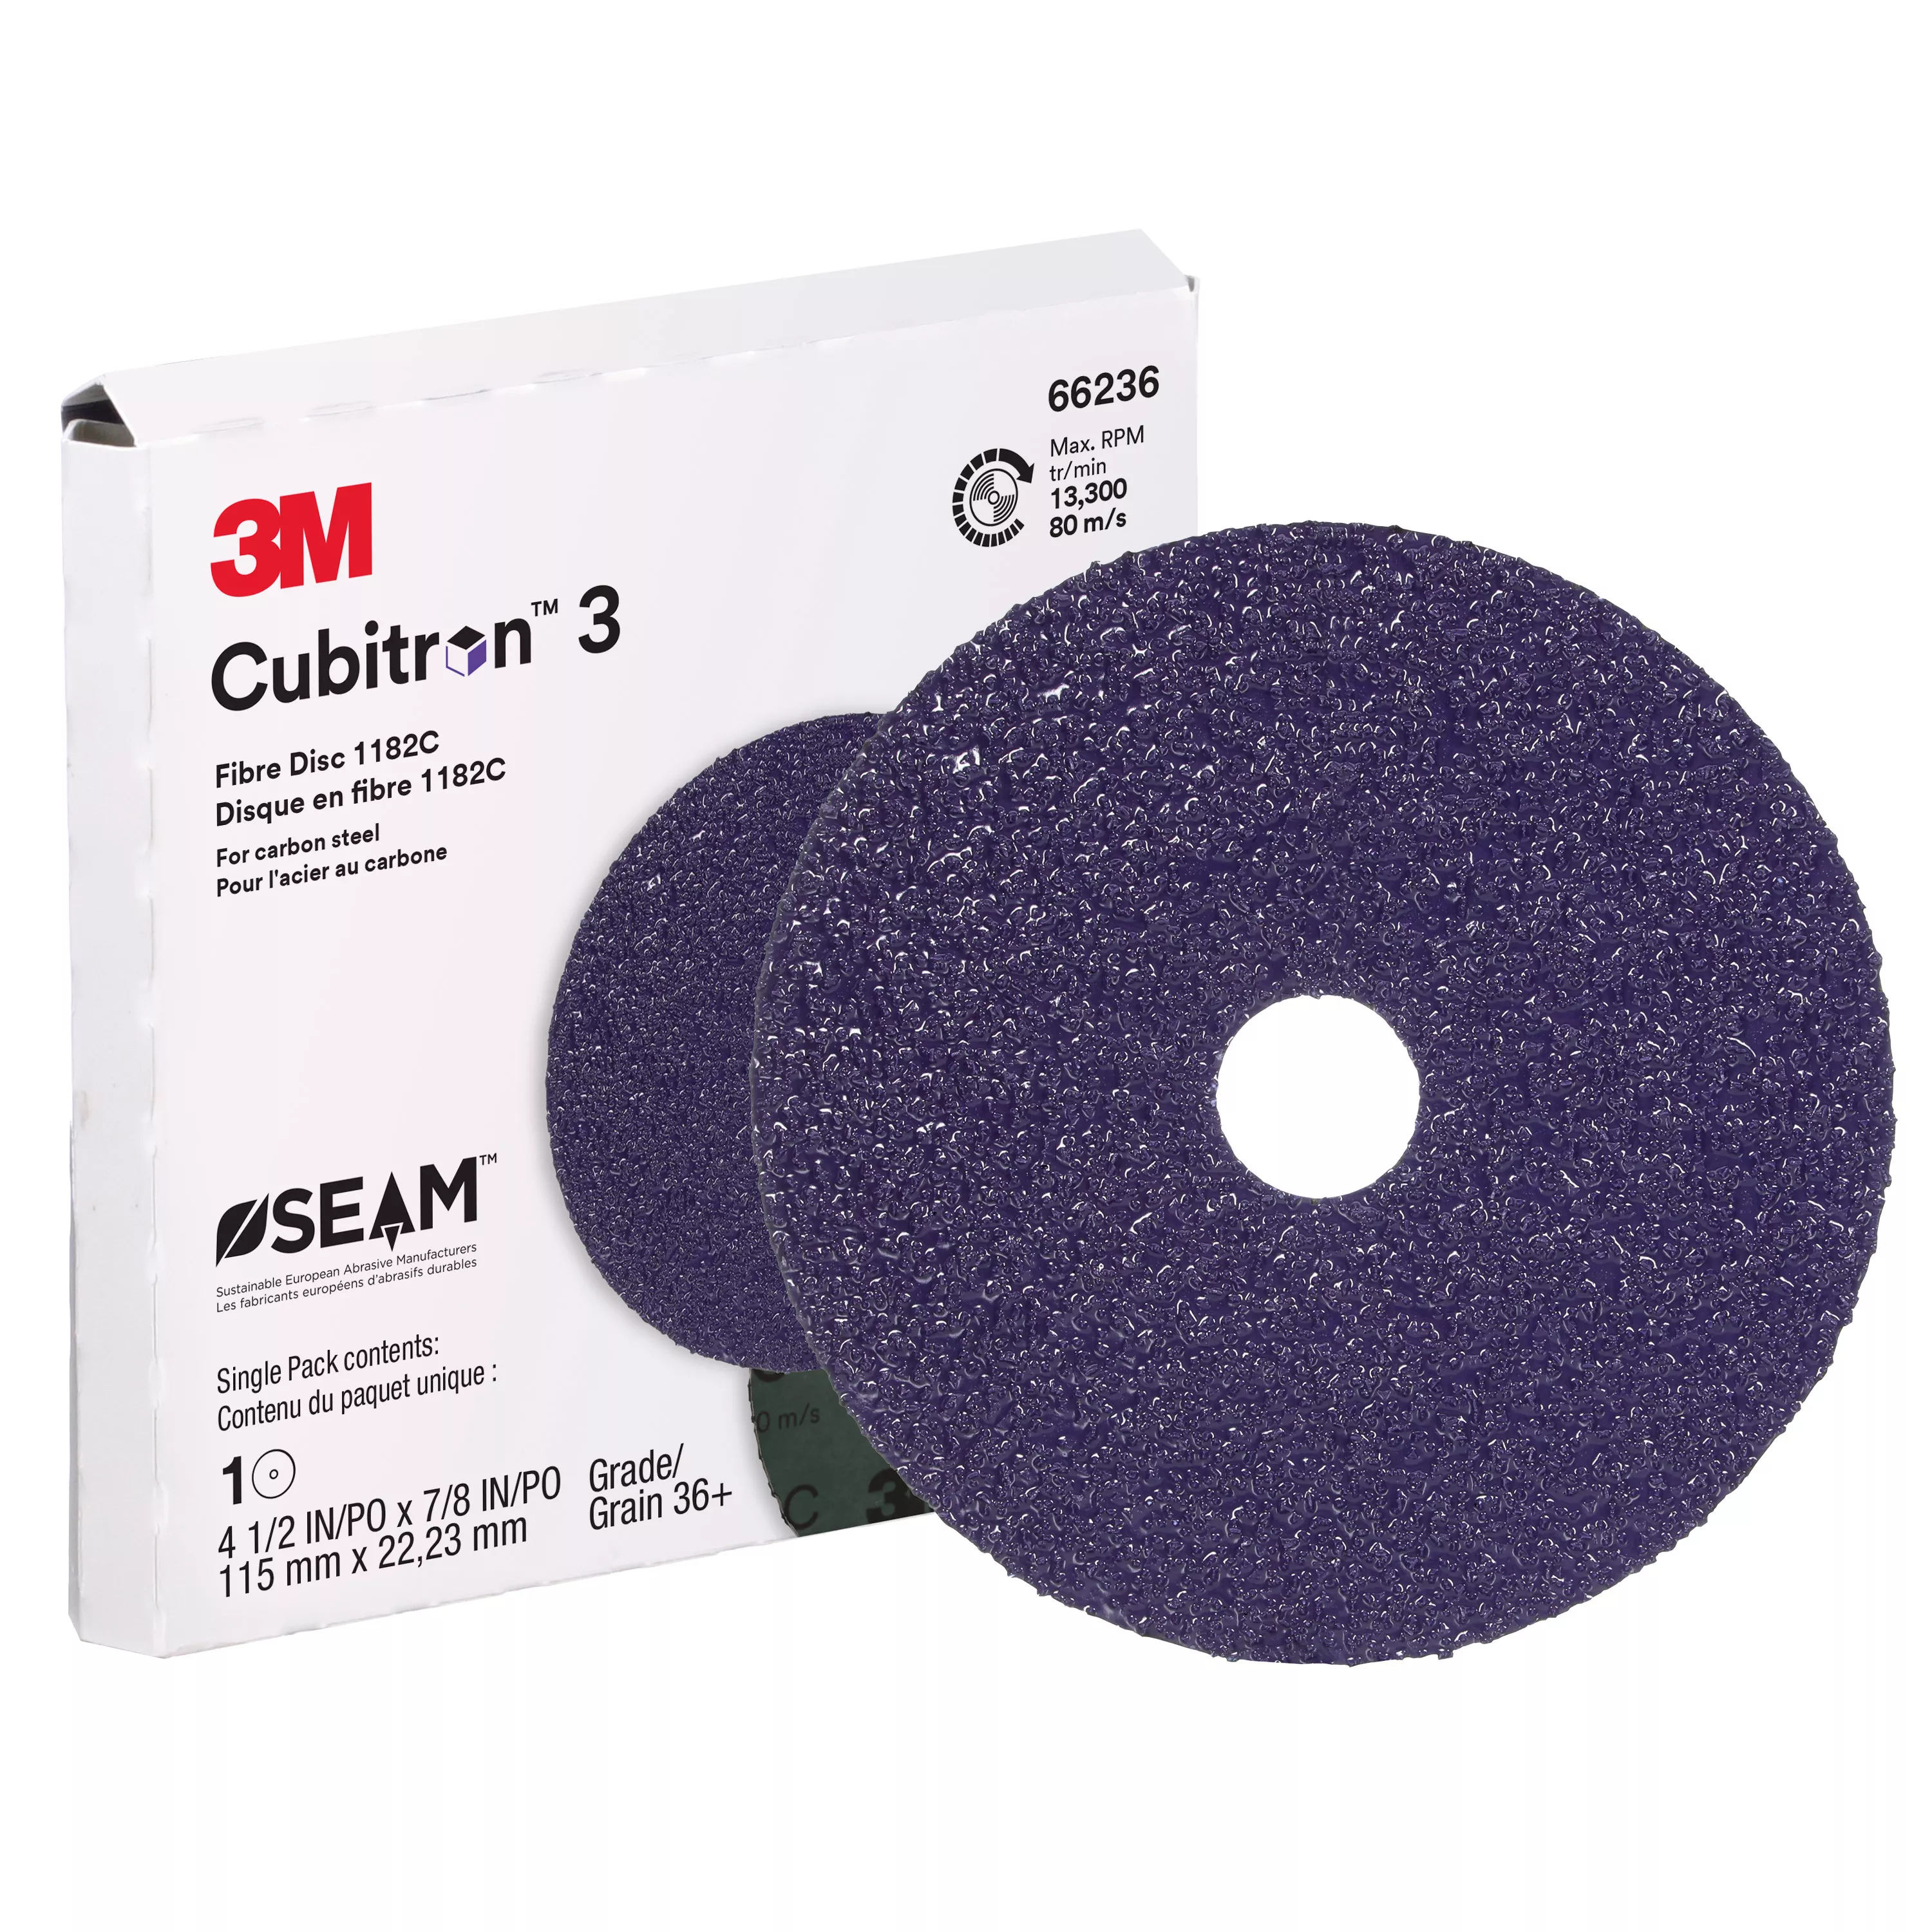 SKU 7100320166 | 3M™ Cubitron™ 3 Fibre Disc 1182C